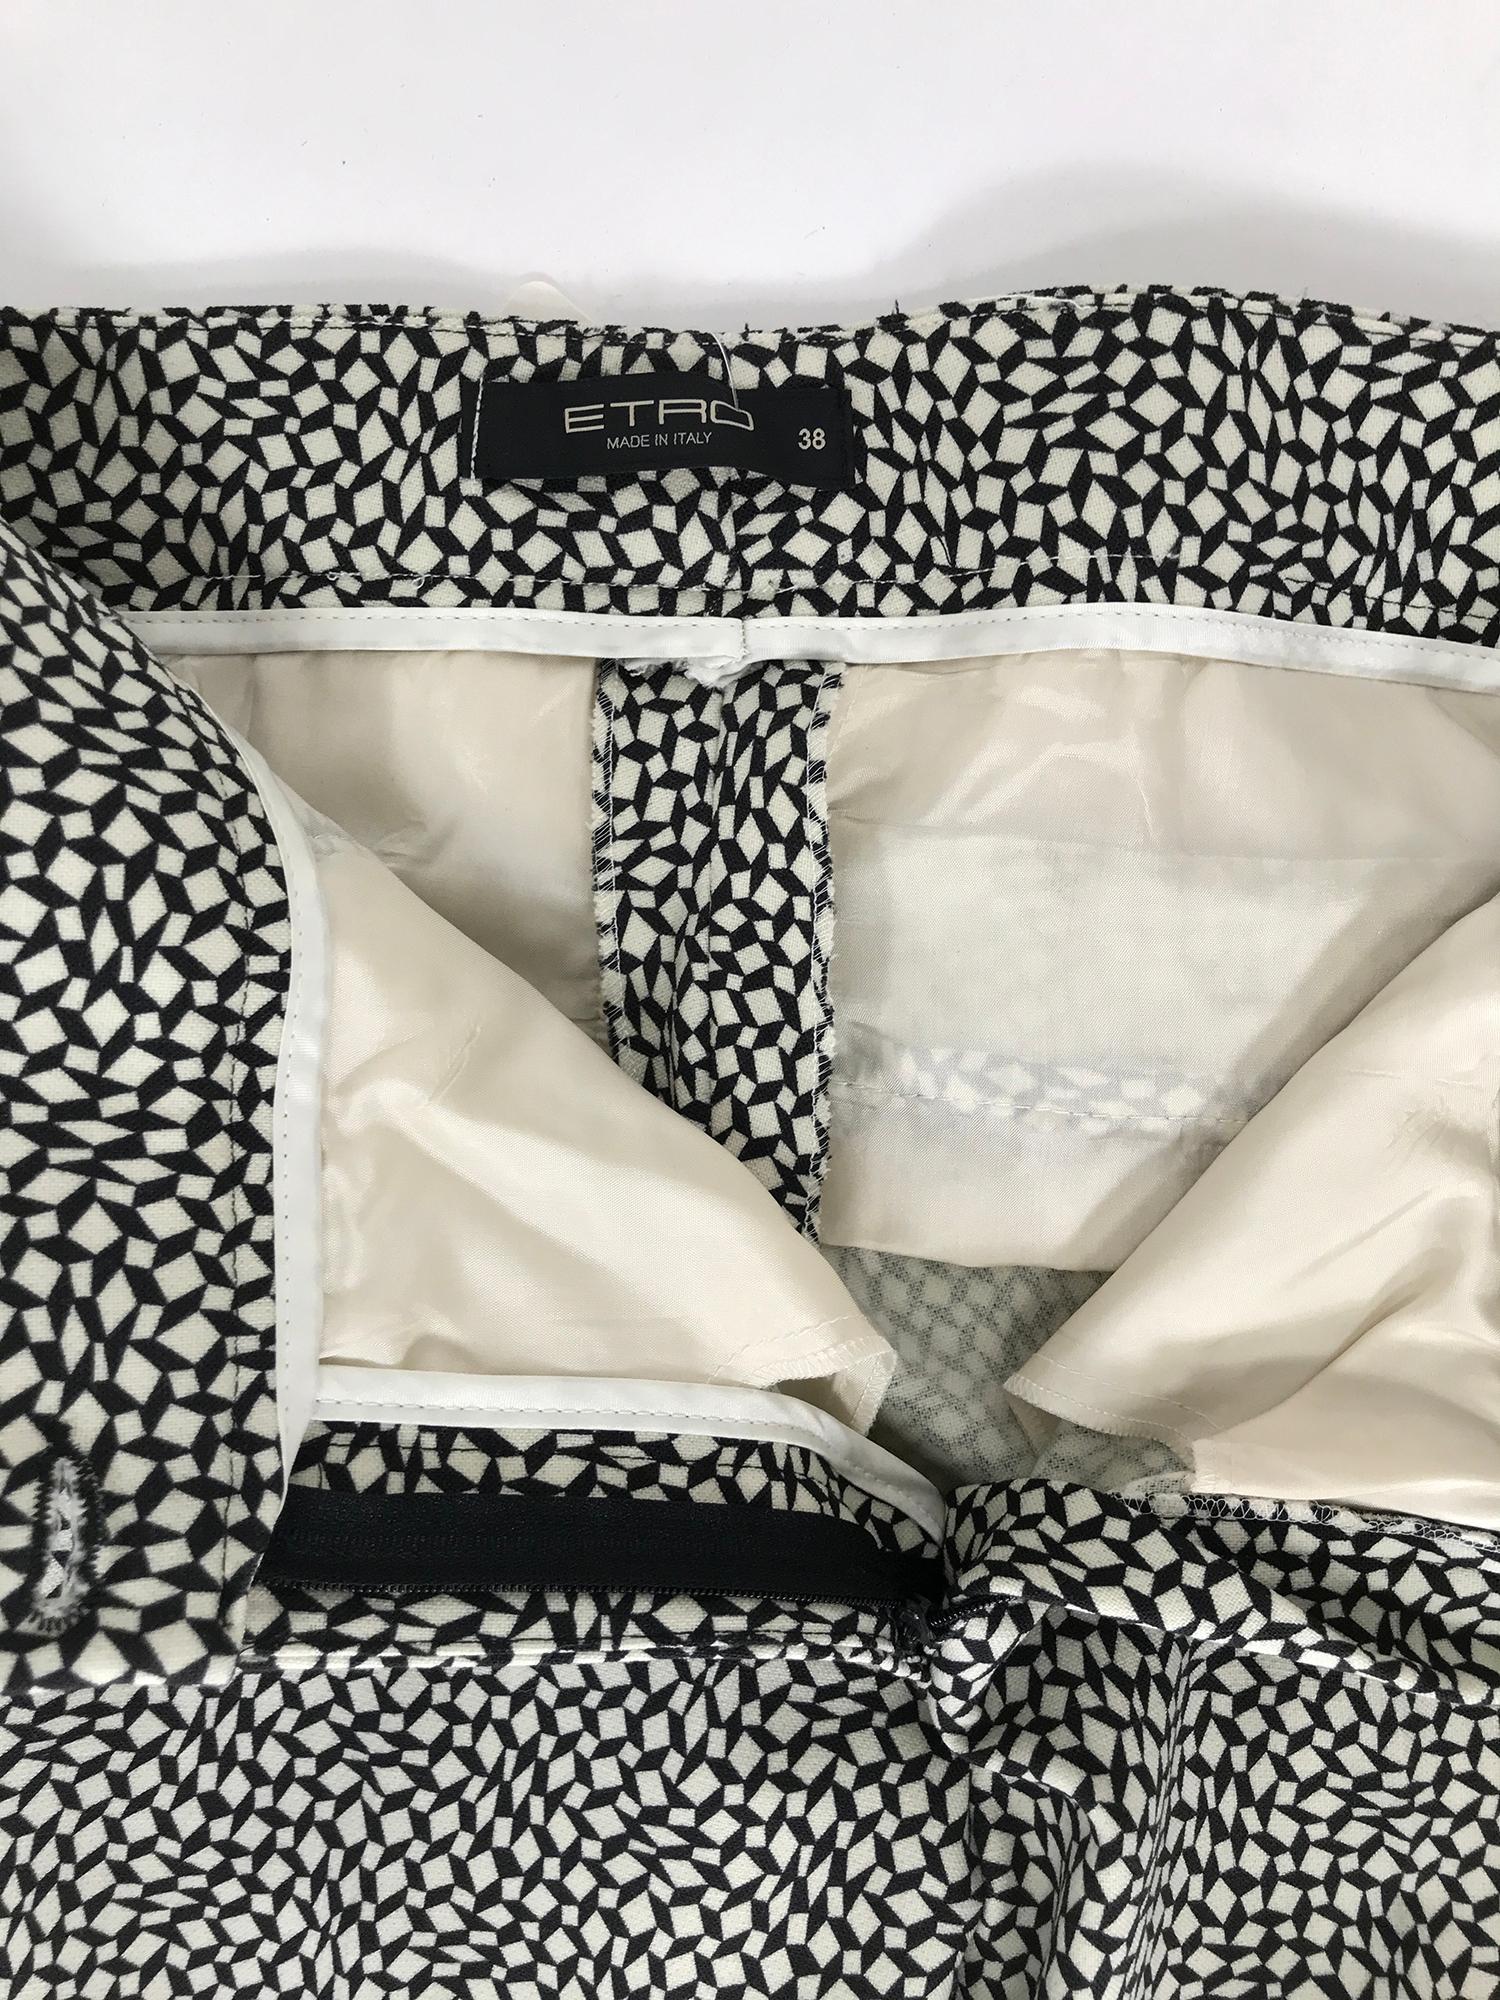 Etro Black & White Diamonds & Squares Print Wool Trousers 38 1